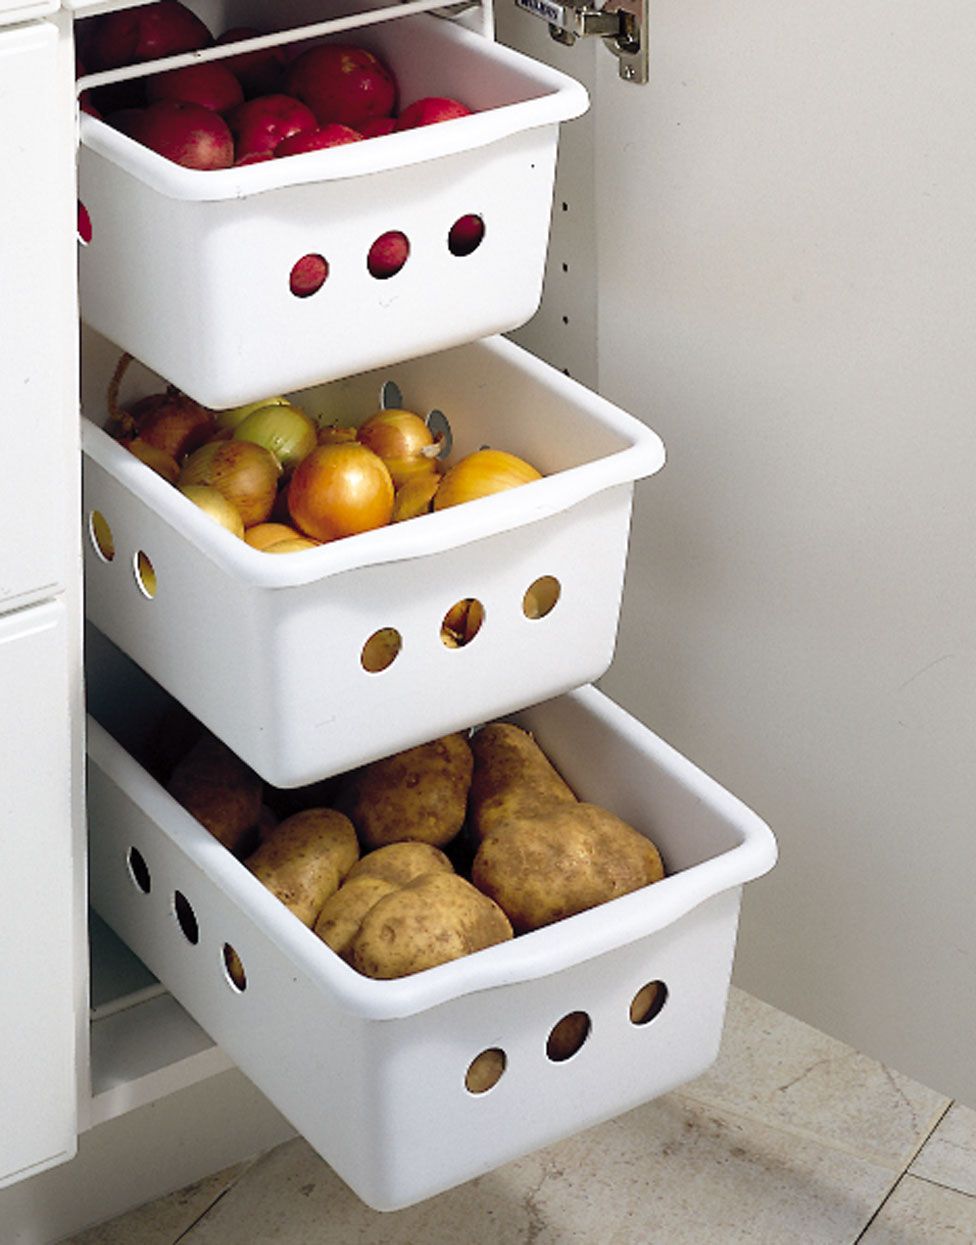 пластиковые ящики для овощей на кухню